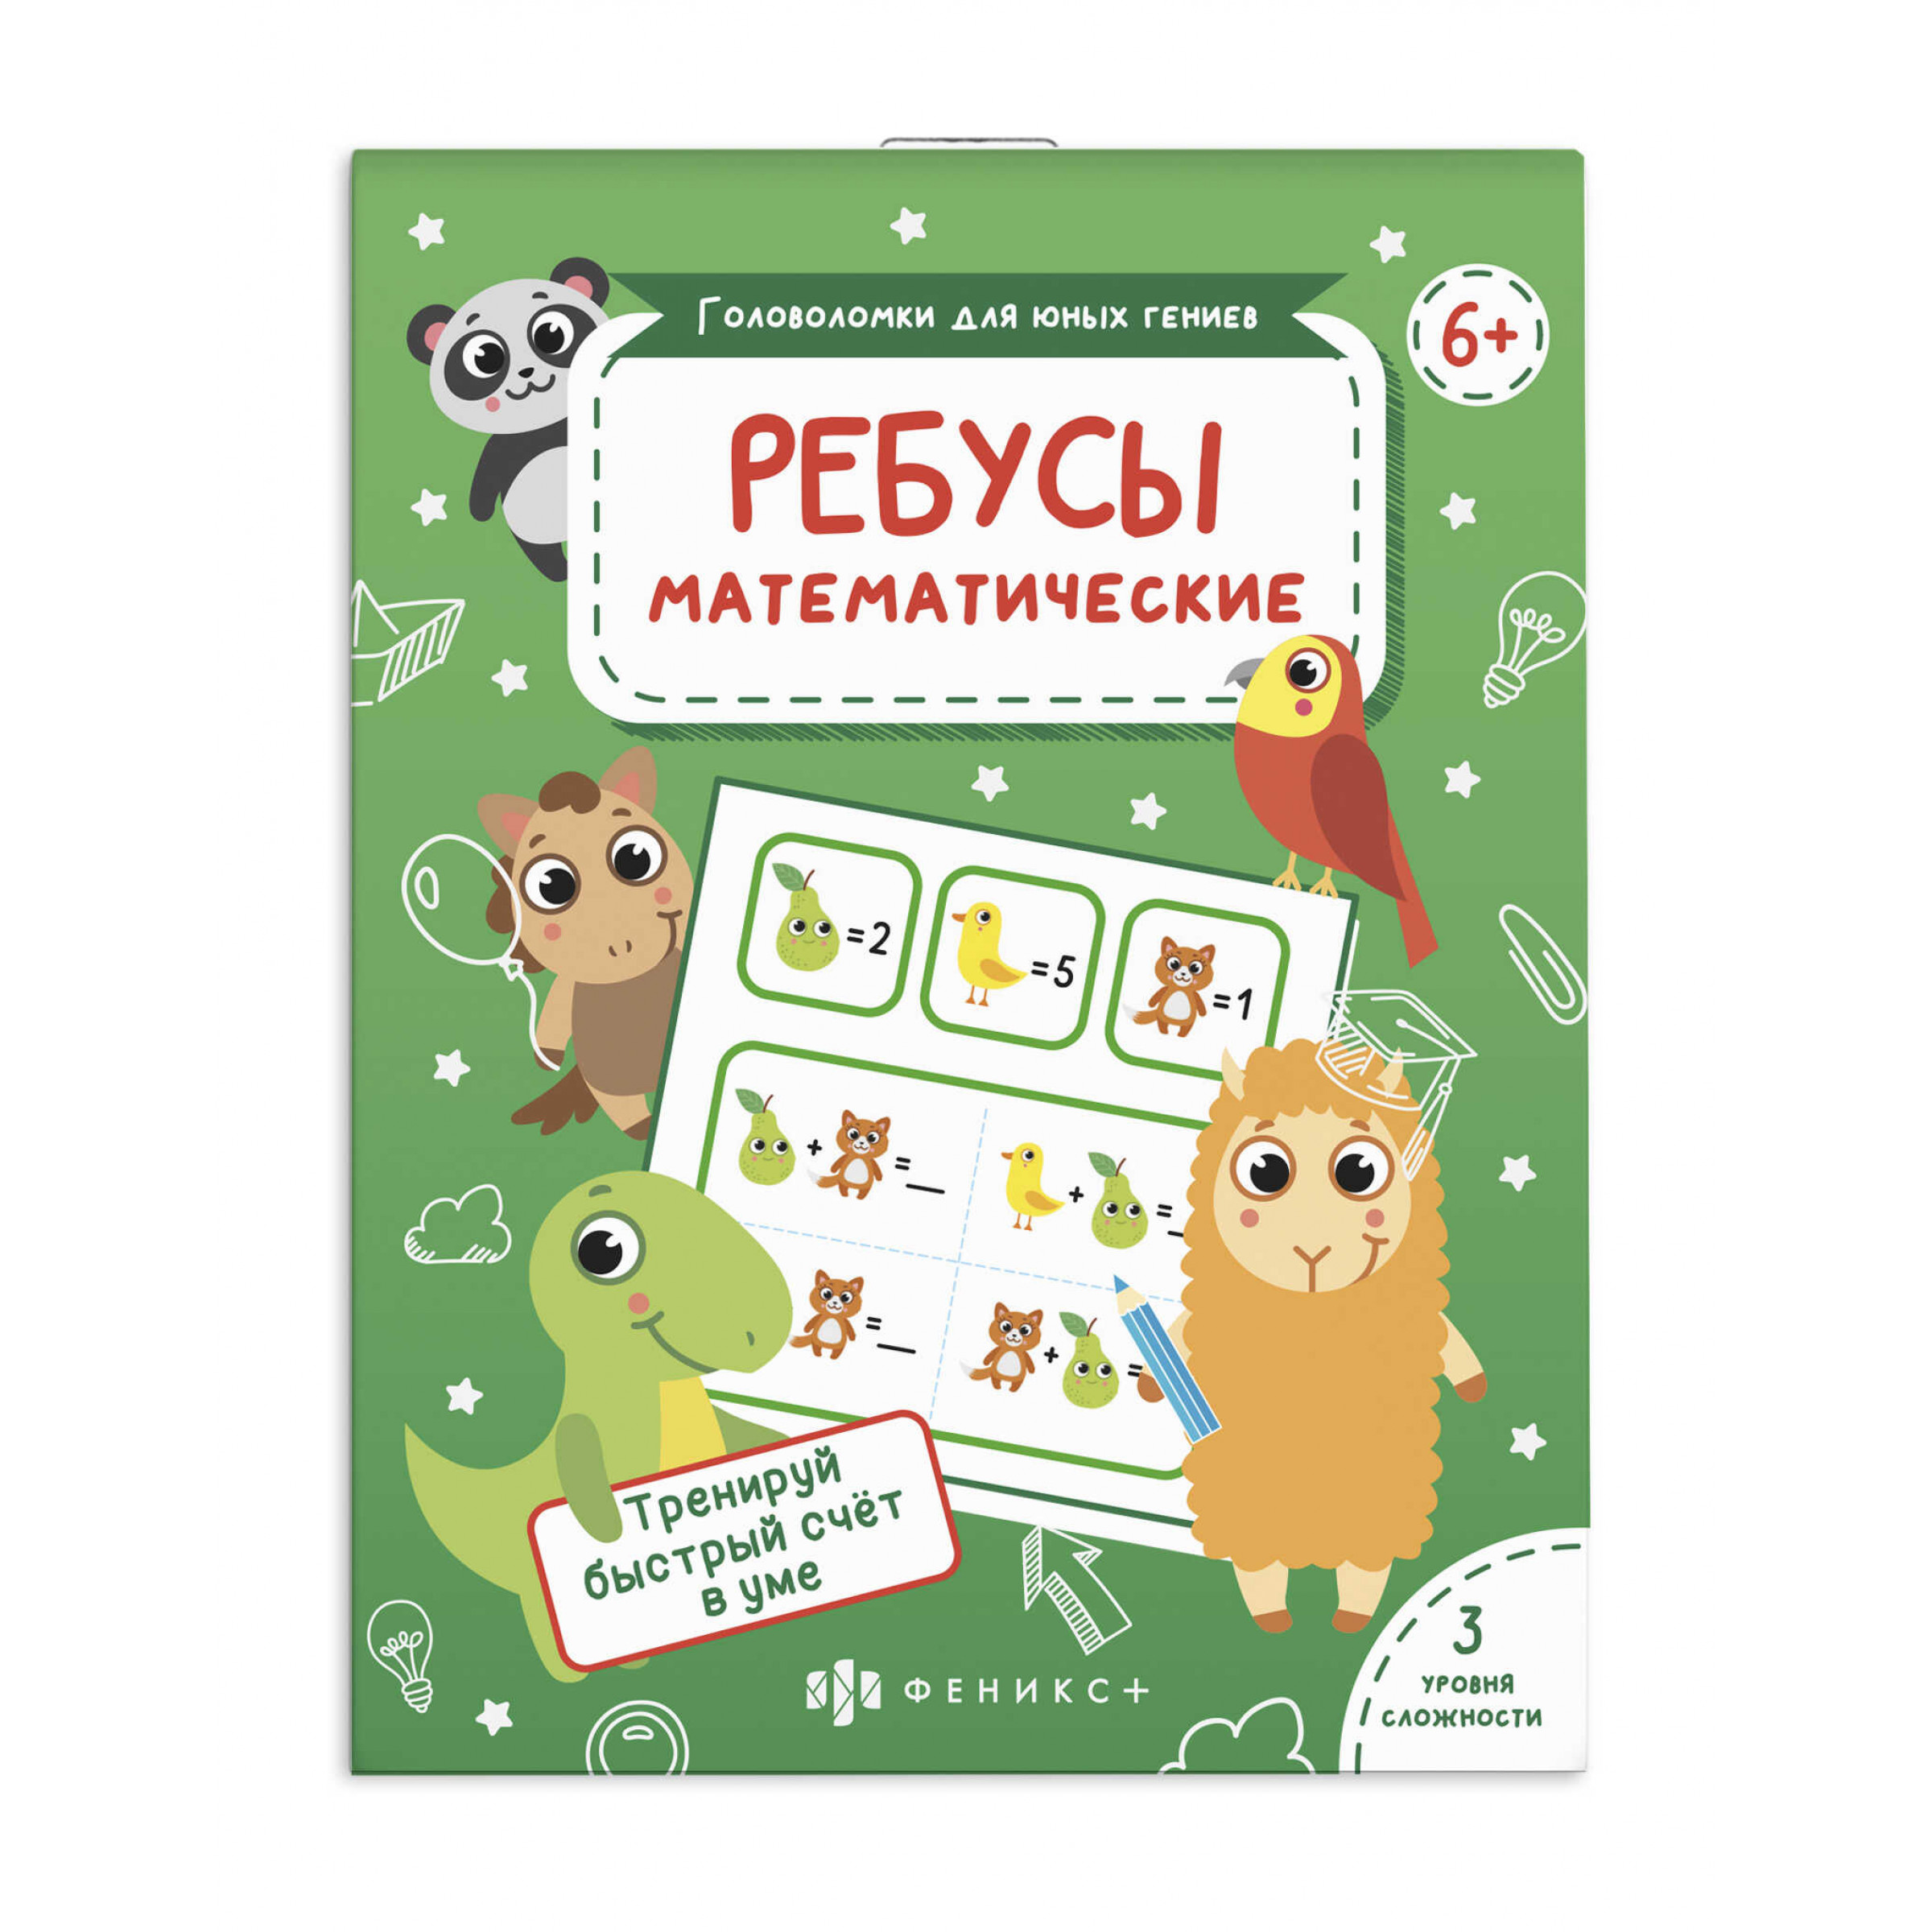 Развивающая книжка-картинка для детей Математические ребусы